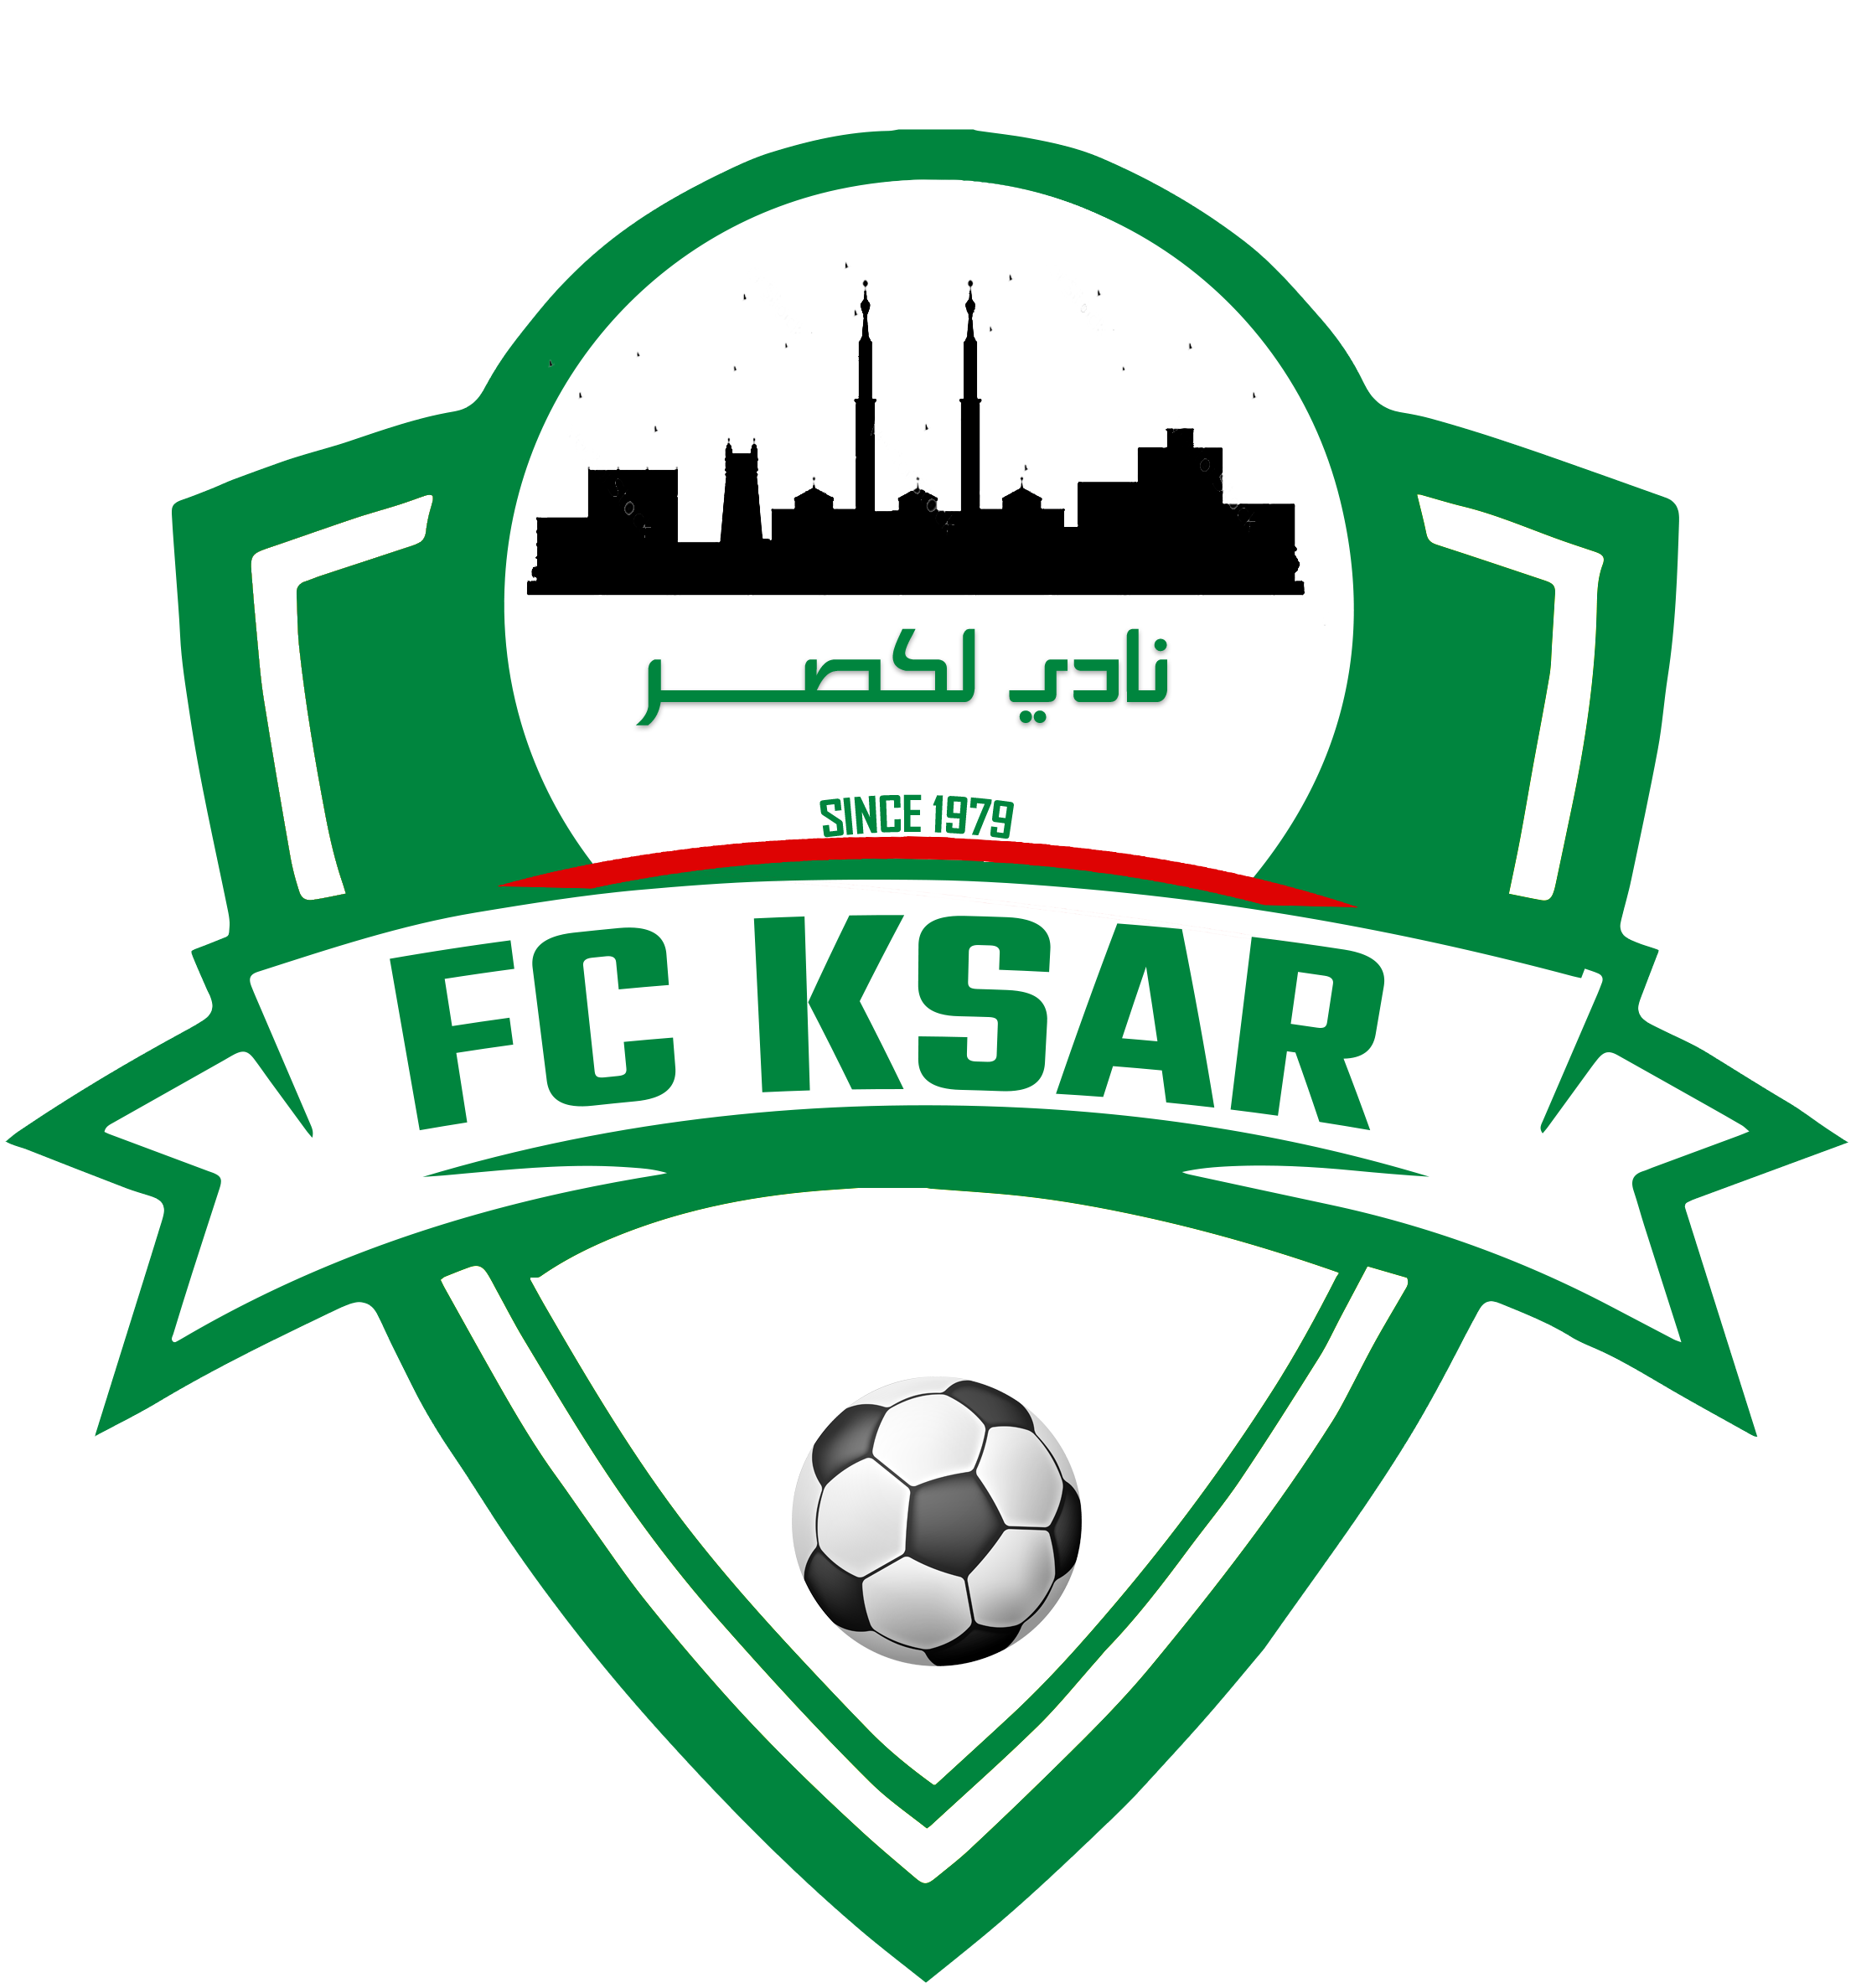 FC Ksar